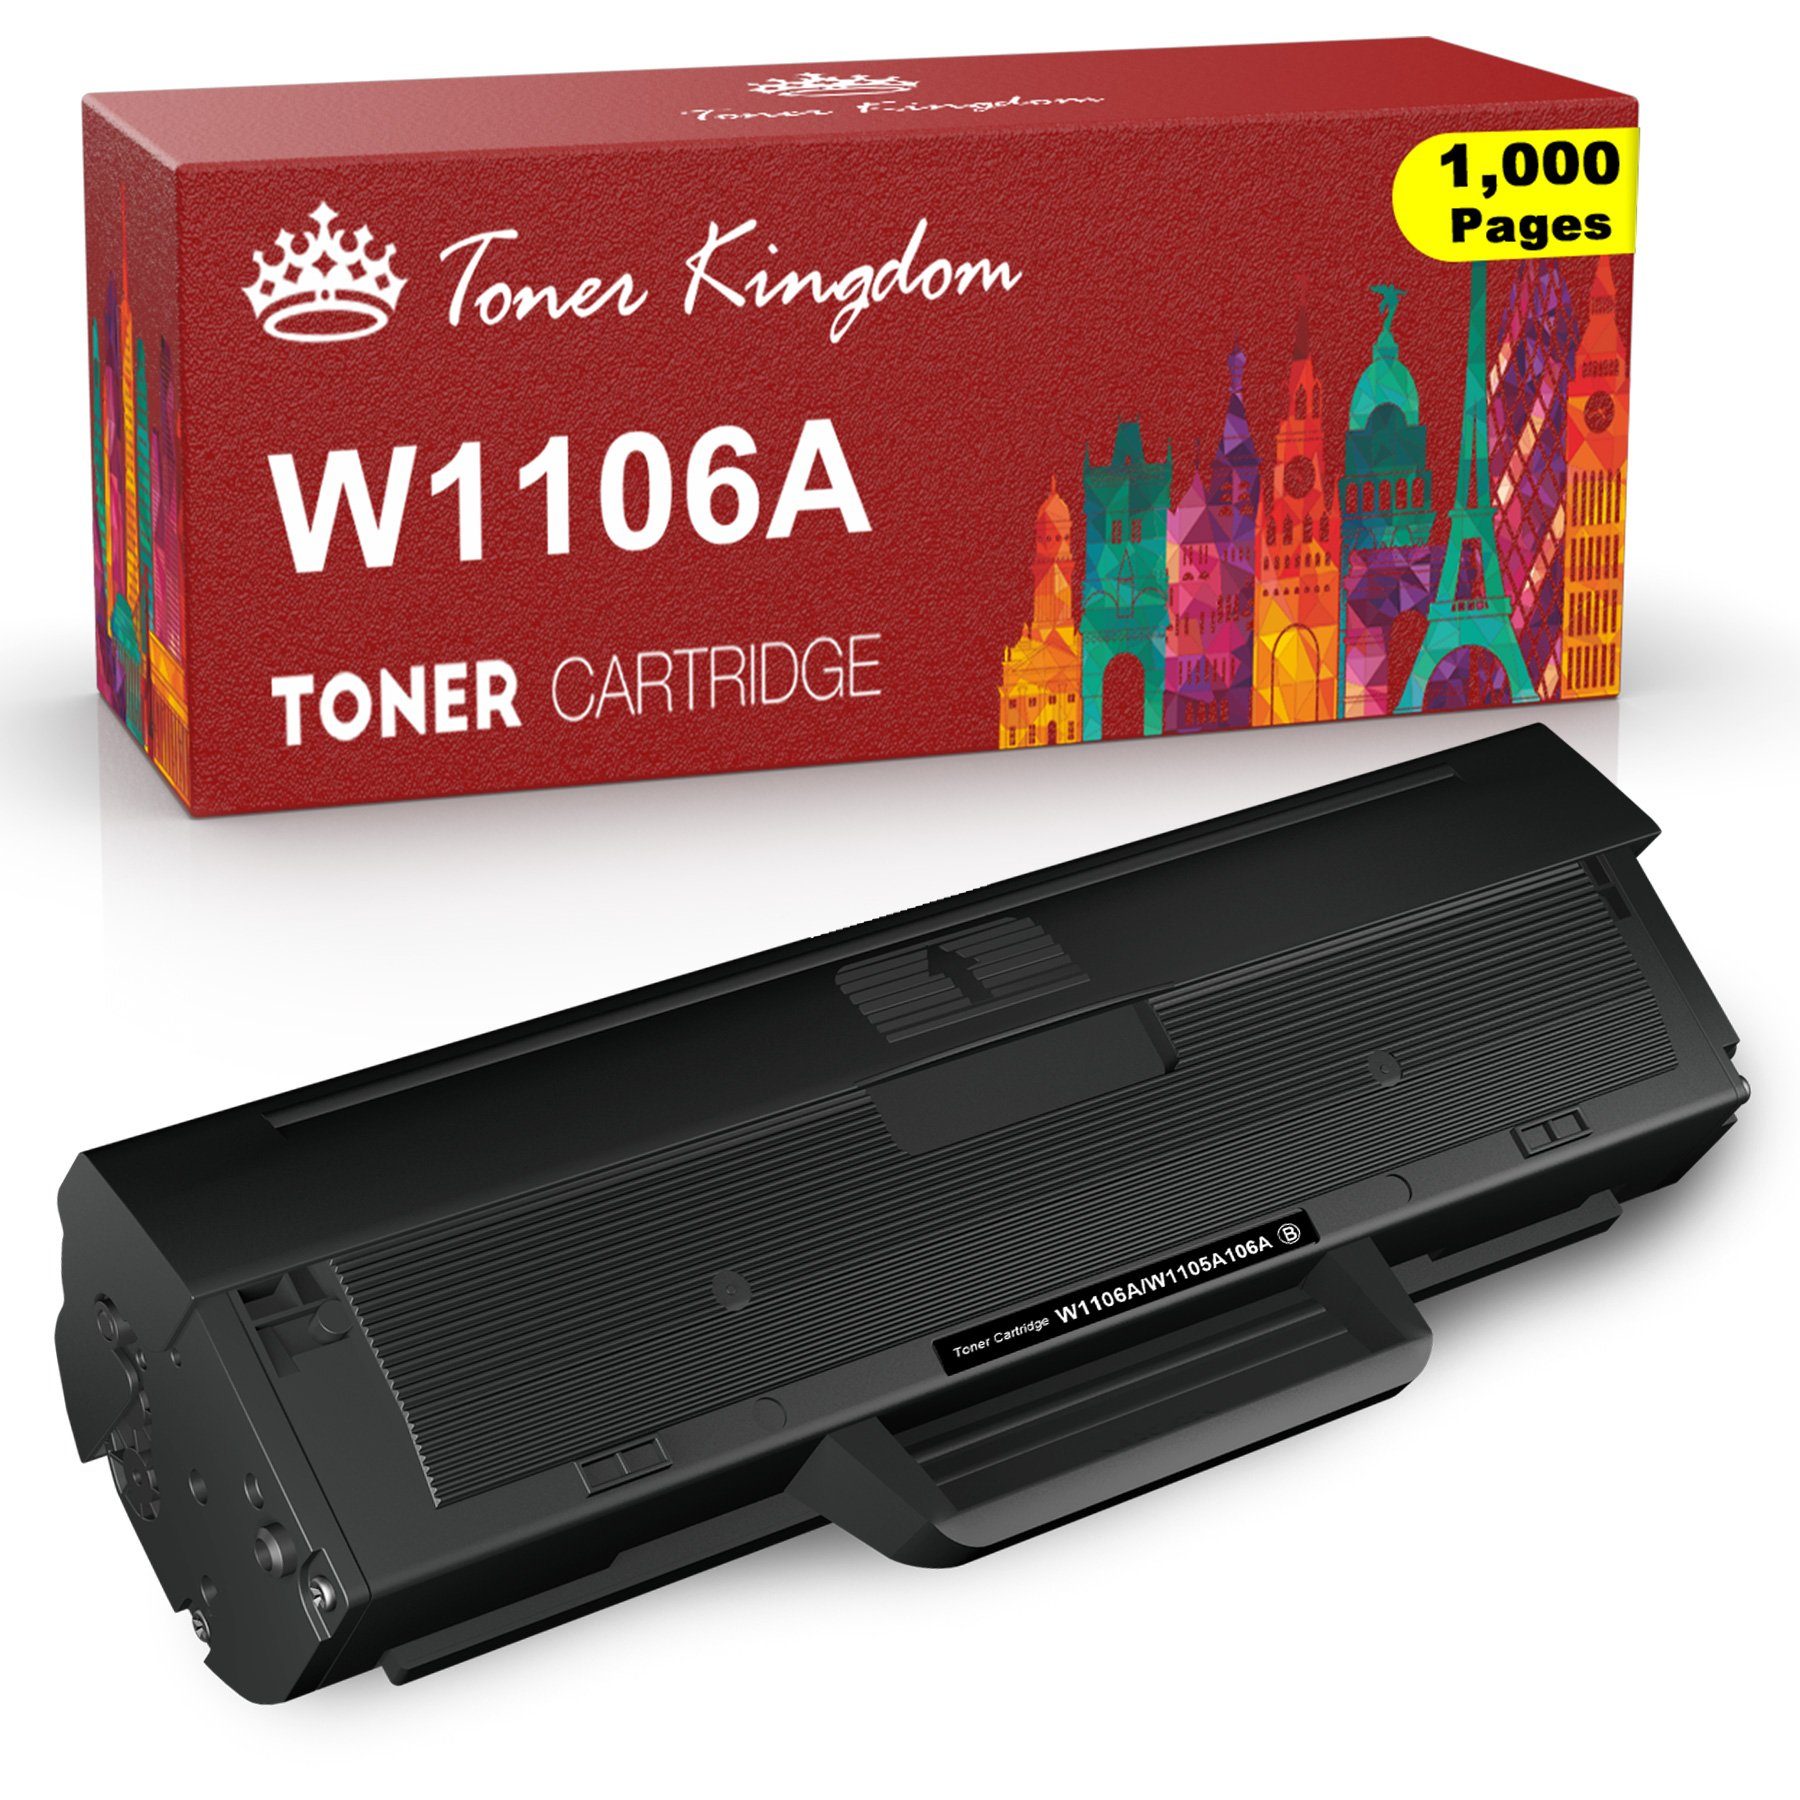 Toner Kingdom Tonerpatrone für HP 106A W1106A, (Mit chip, 1-St), Laser MFP 135a 135wg 137fnw 107a